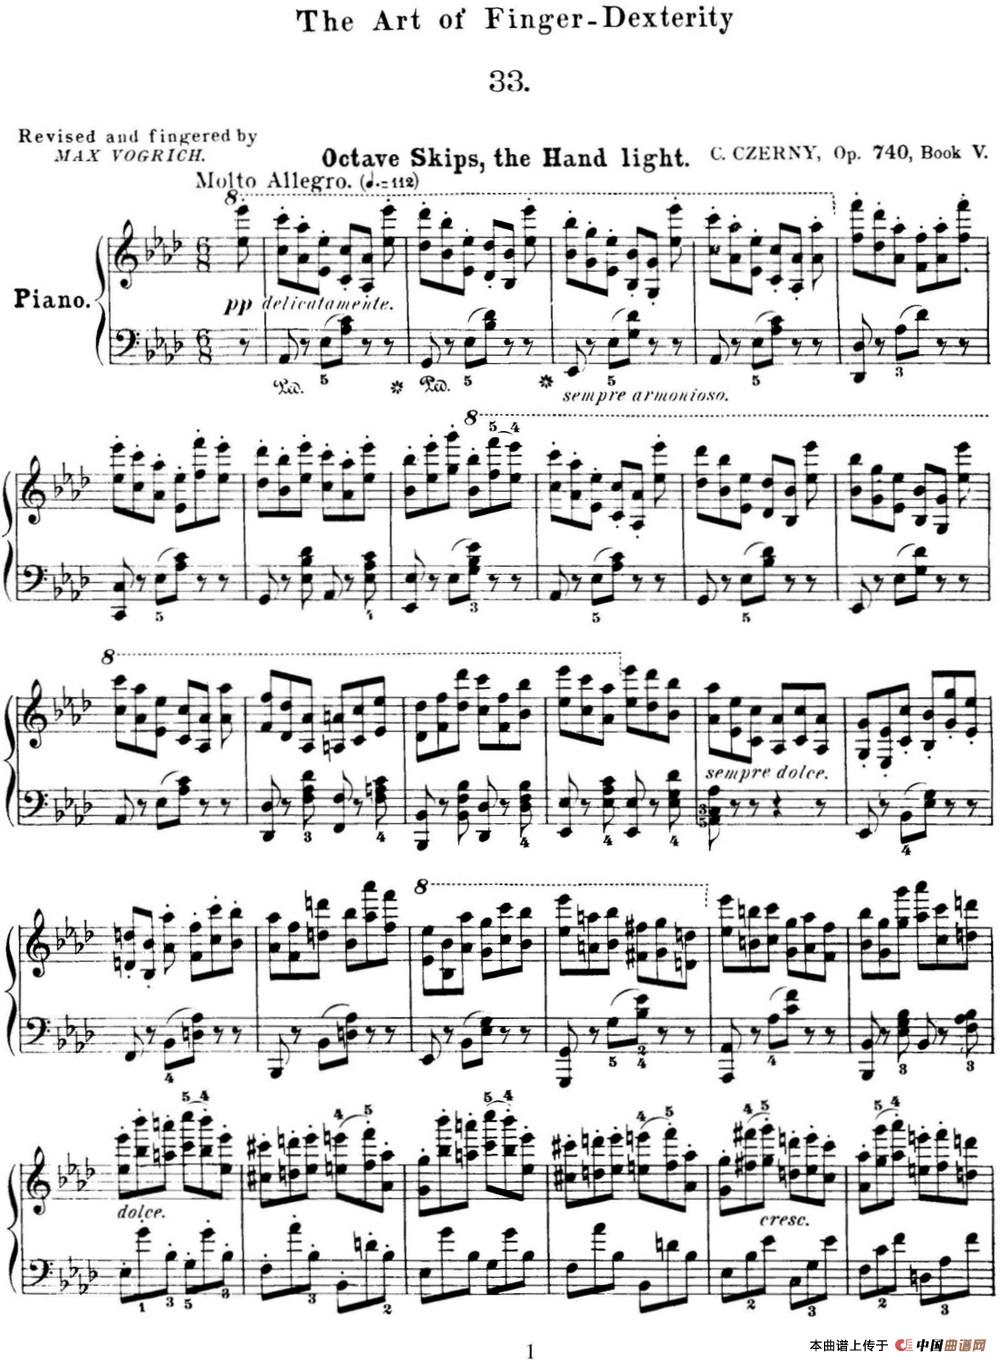 50首车尔尼Op.740钢琴手指灵巧技术练习曲（NO.33）(1)_C740_页面_120.jpg